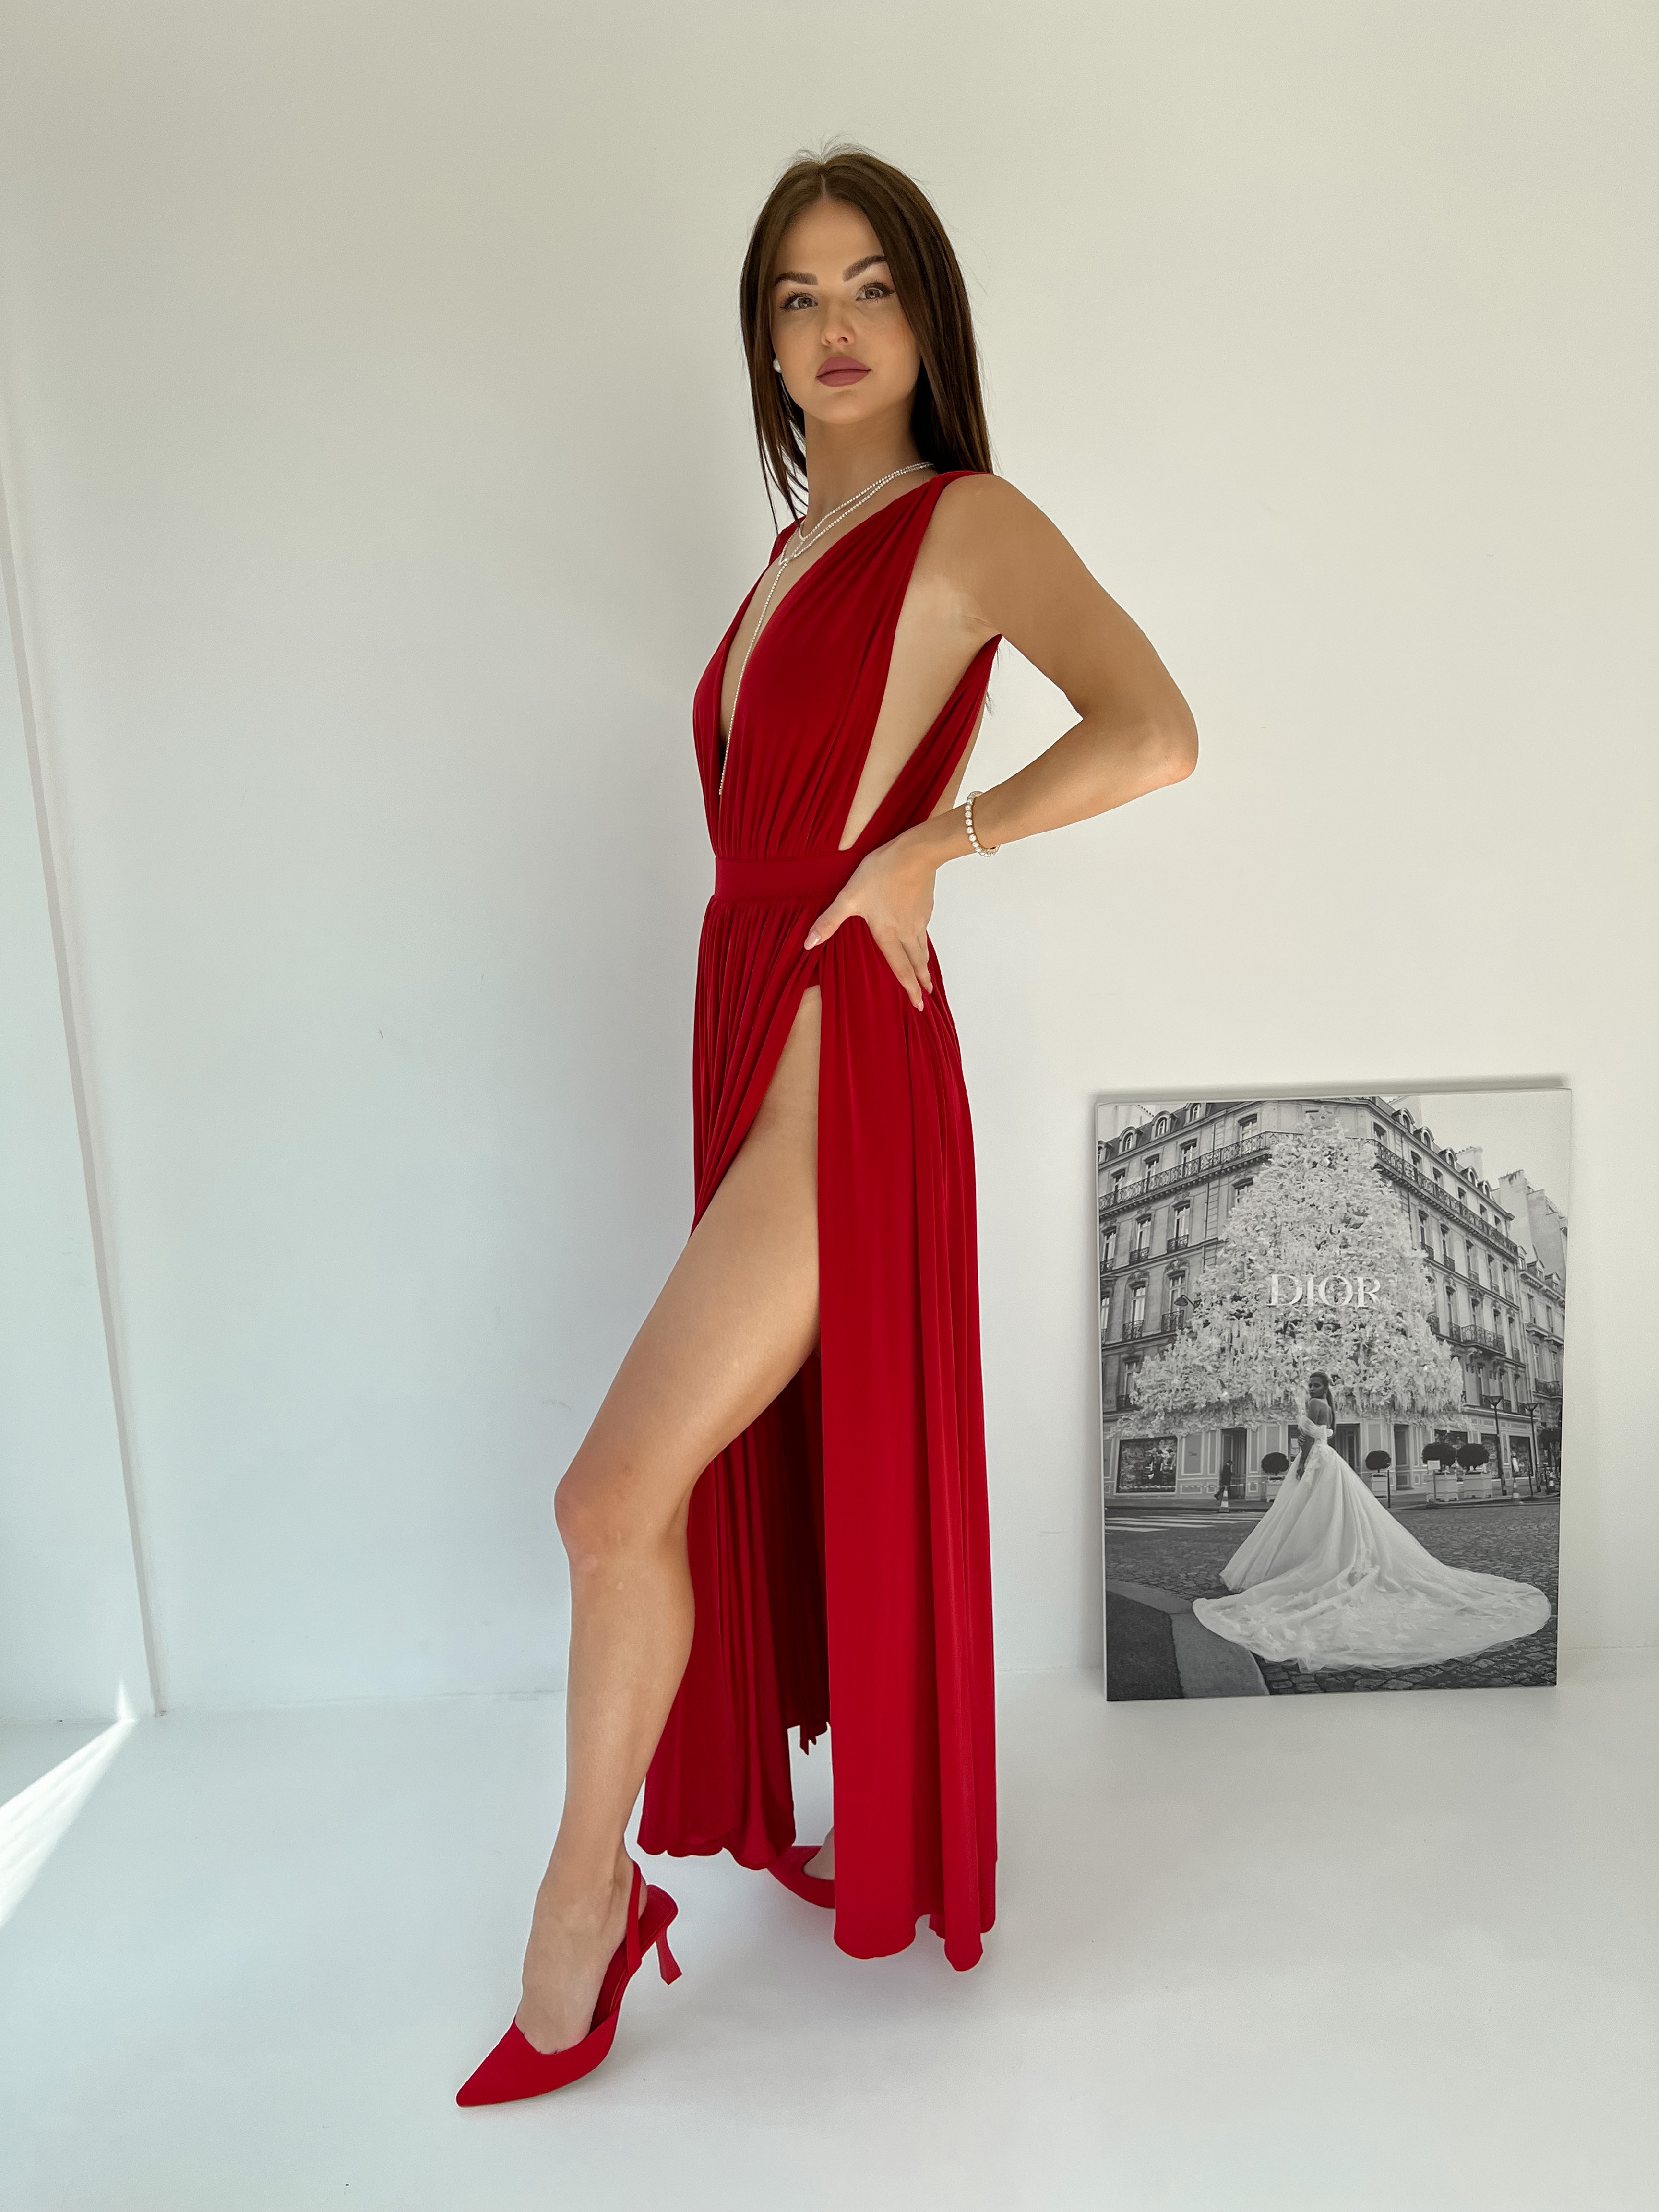 Šaty MIA červené shine VELIKOST: UNI(XS-M), Délka sukně: Délka 1